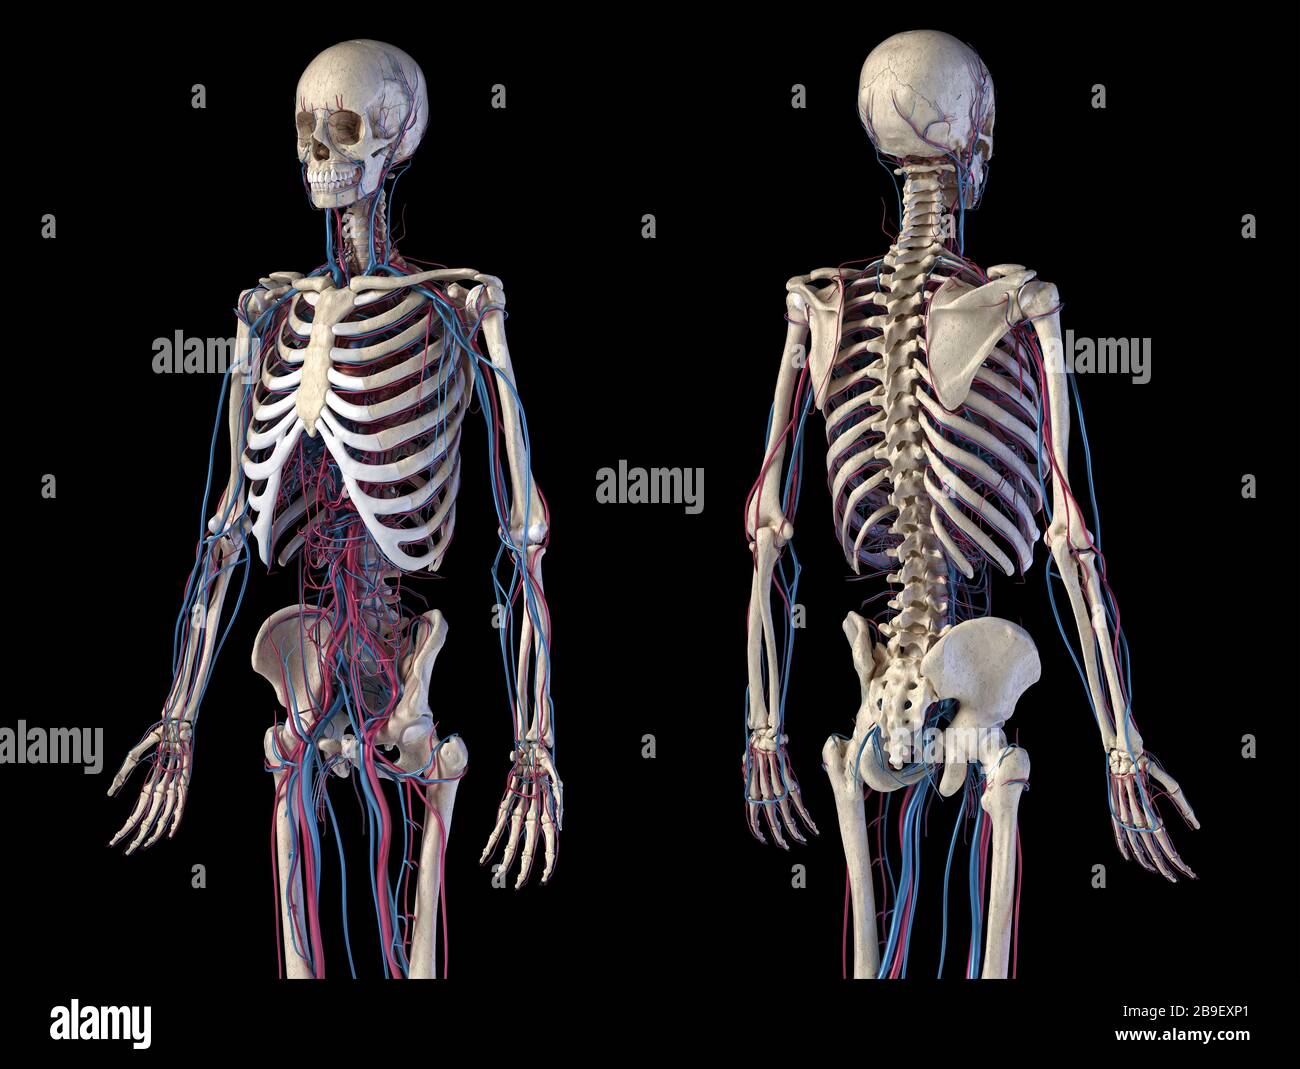 Vorder- und Rückansicht von menschlichen Skelett- und kardiovaskulären Systemen, schwarzer Hintergrund. Stockfoto